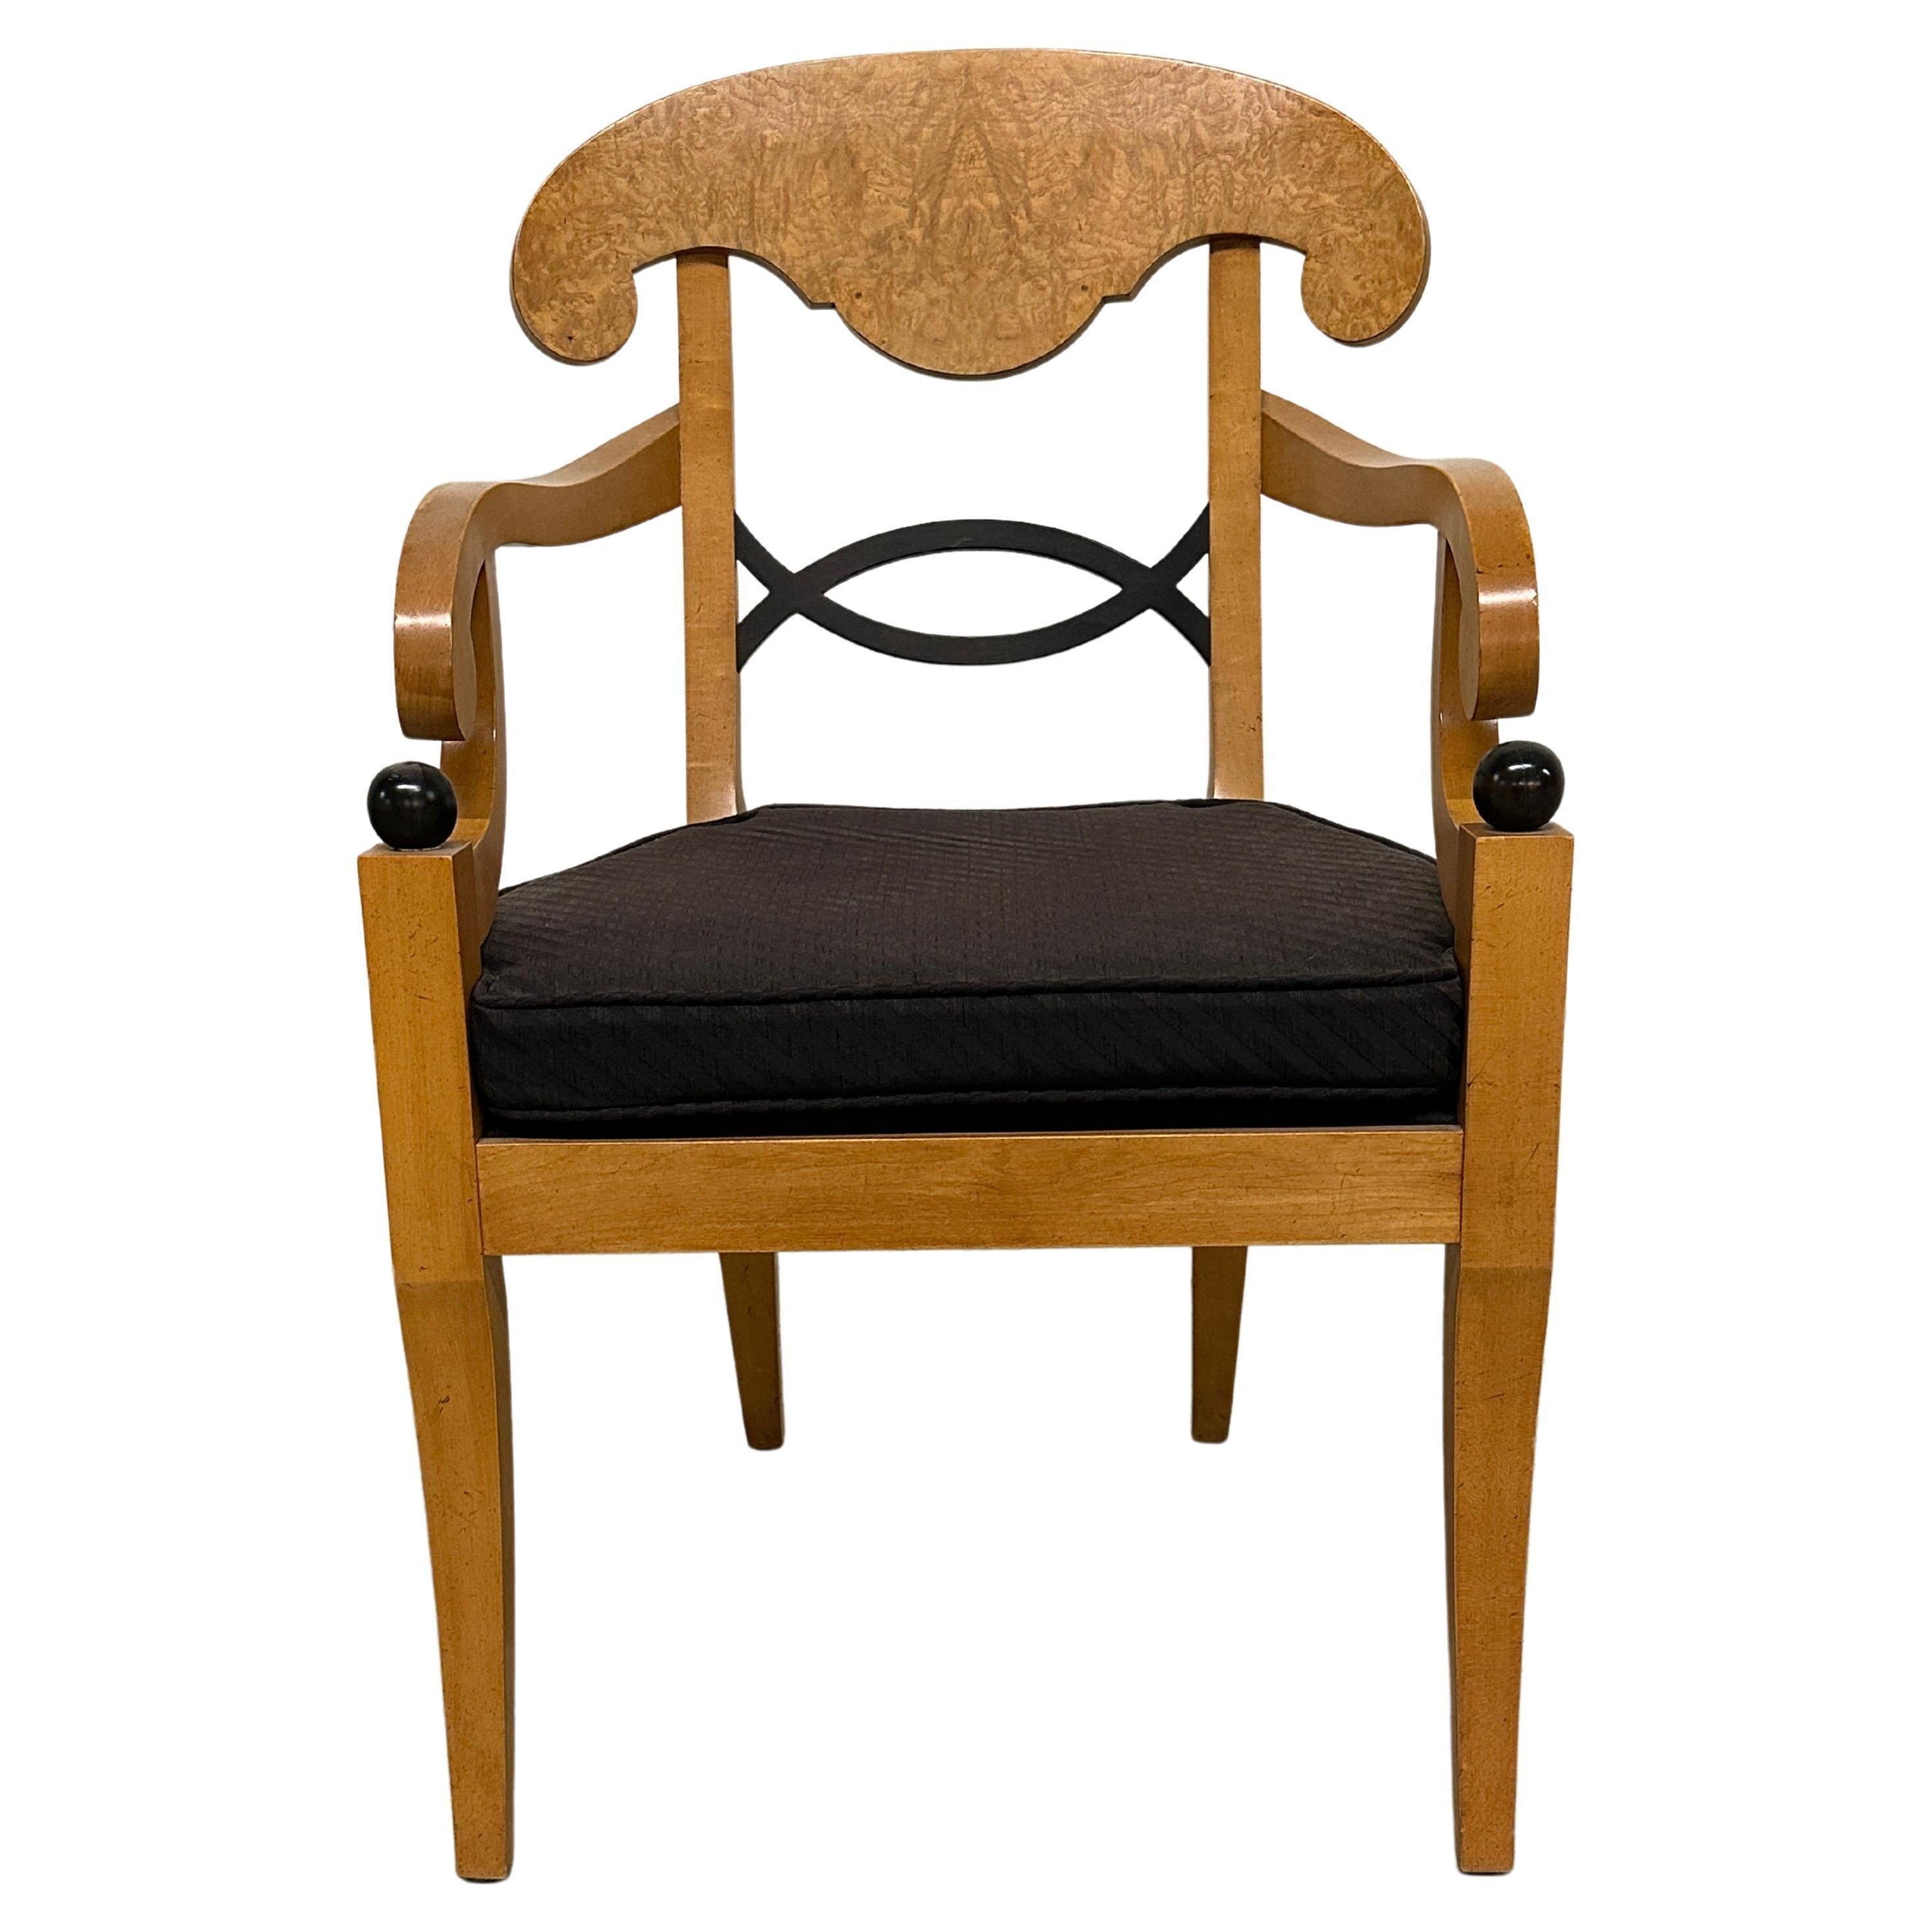 biedermeier chairs baker furniture